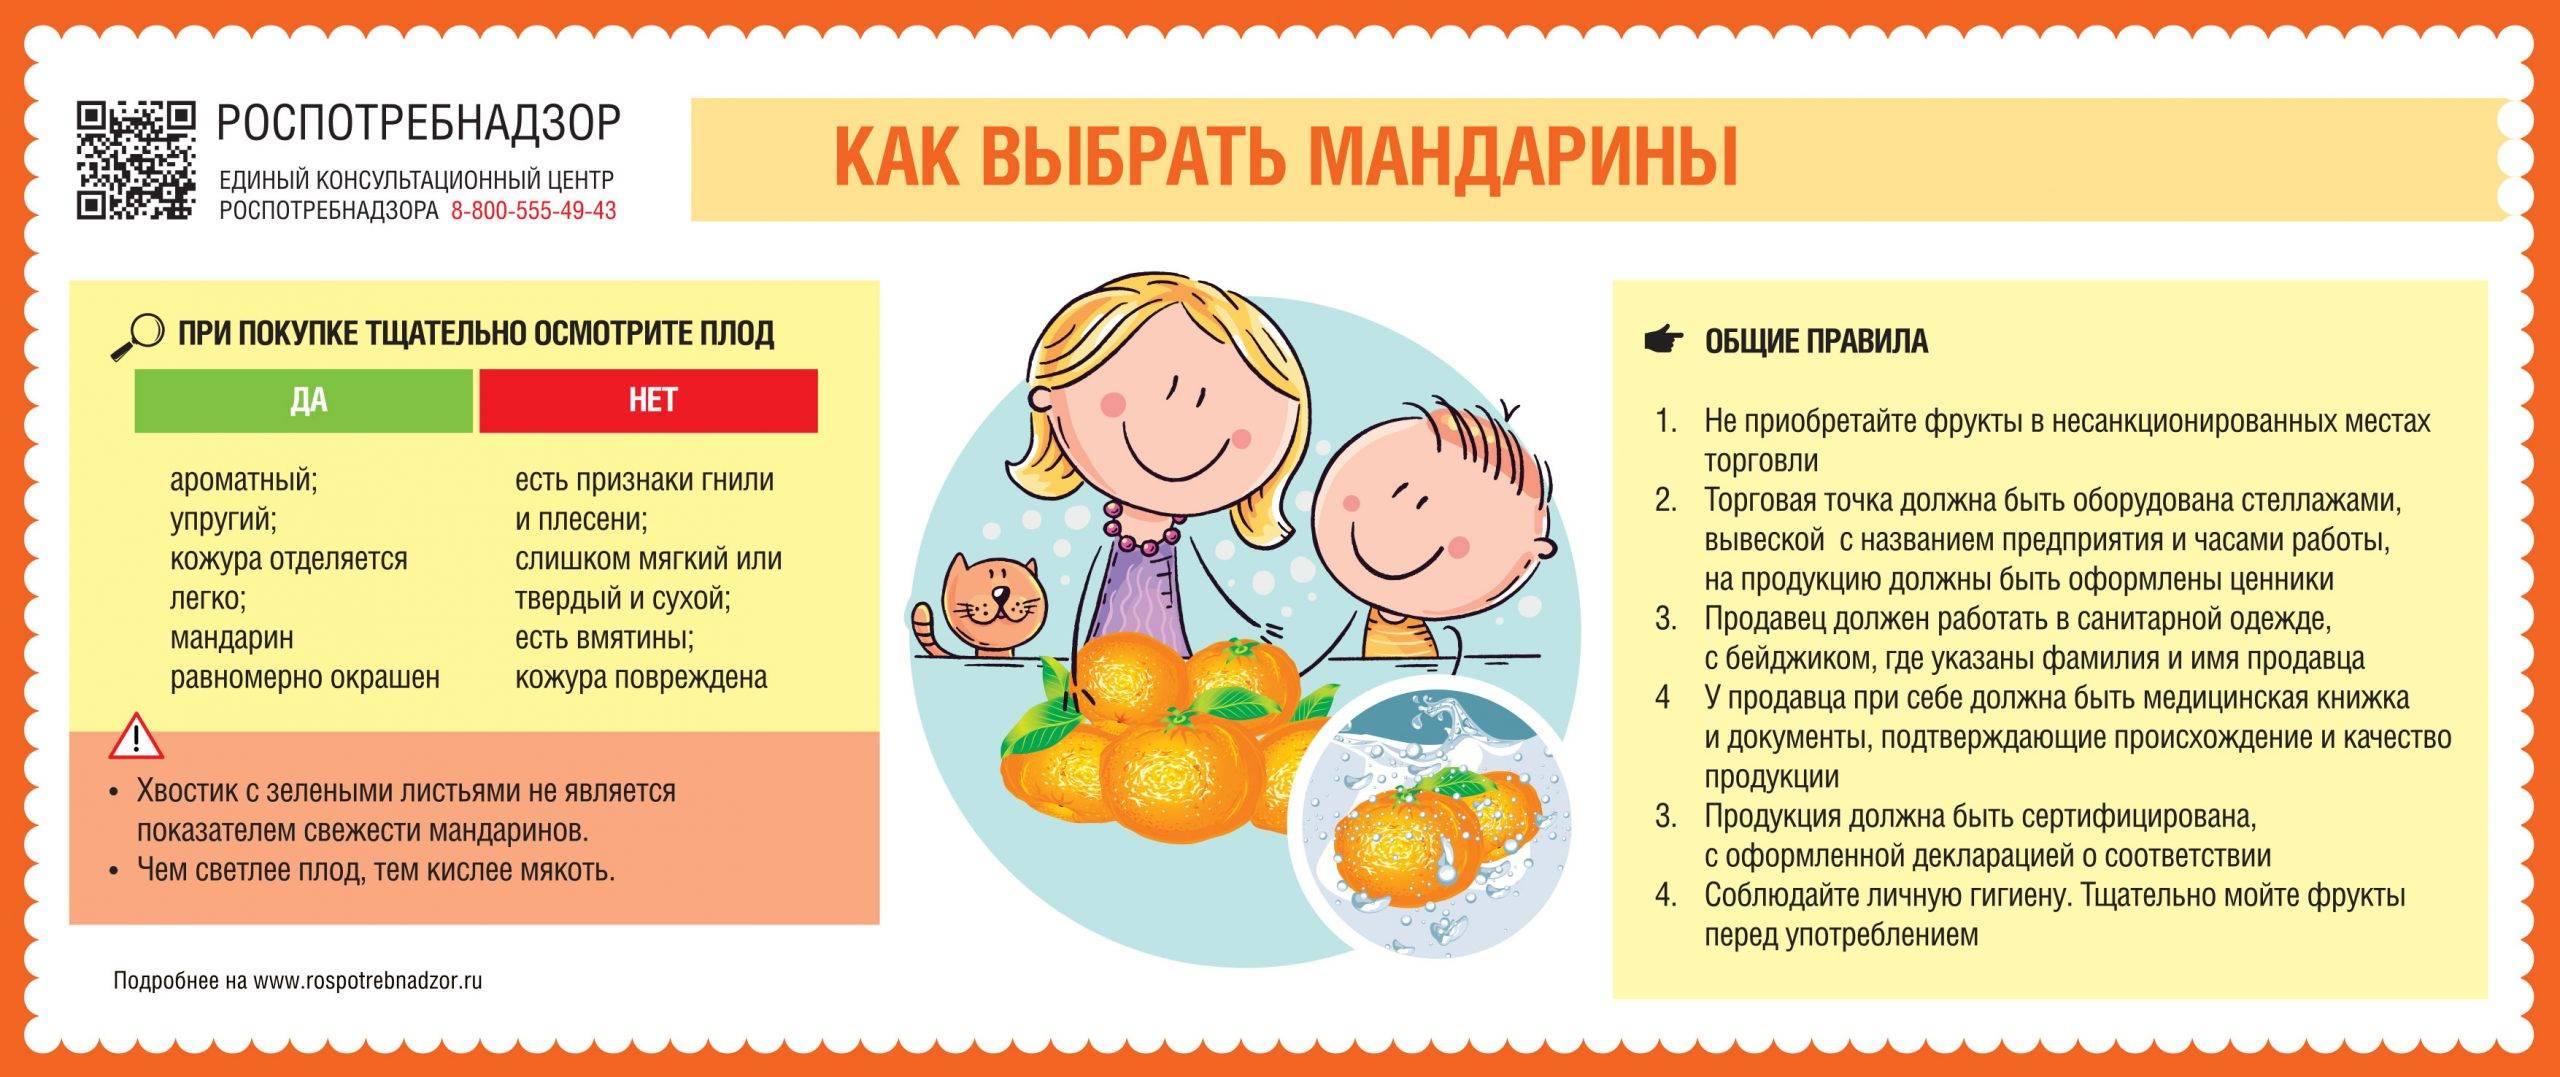 Комнатный мандарин: уход и выращивание в домашних условиях - sadovnikam.ru